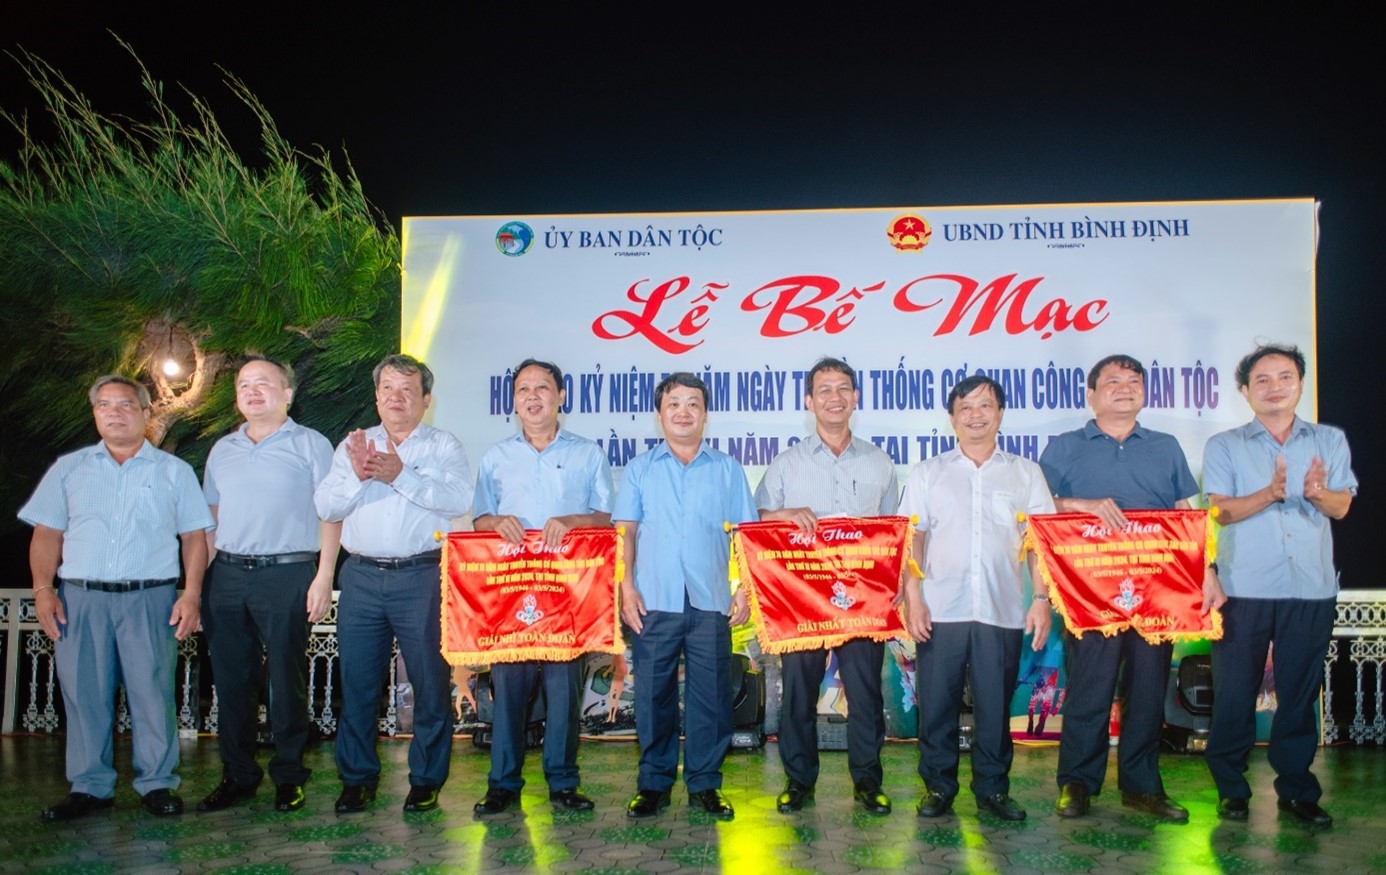 Sôi nổi tham gia các hoạt động chào mừng kỷ niệm 78 năm Ngày truyền thống Cơ quan công tác Dân tộc (03/5/1946 - 03/5/2024) tại tỉnh Bình Định